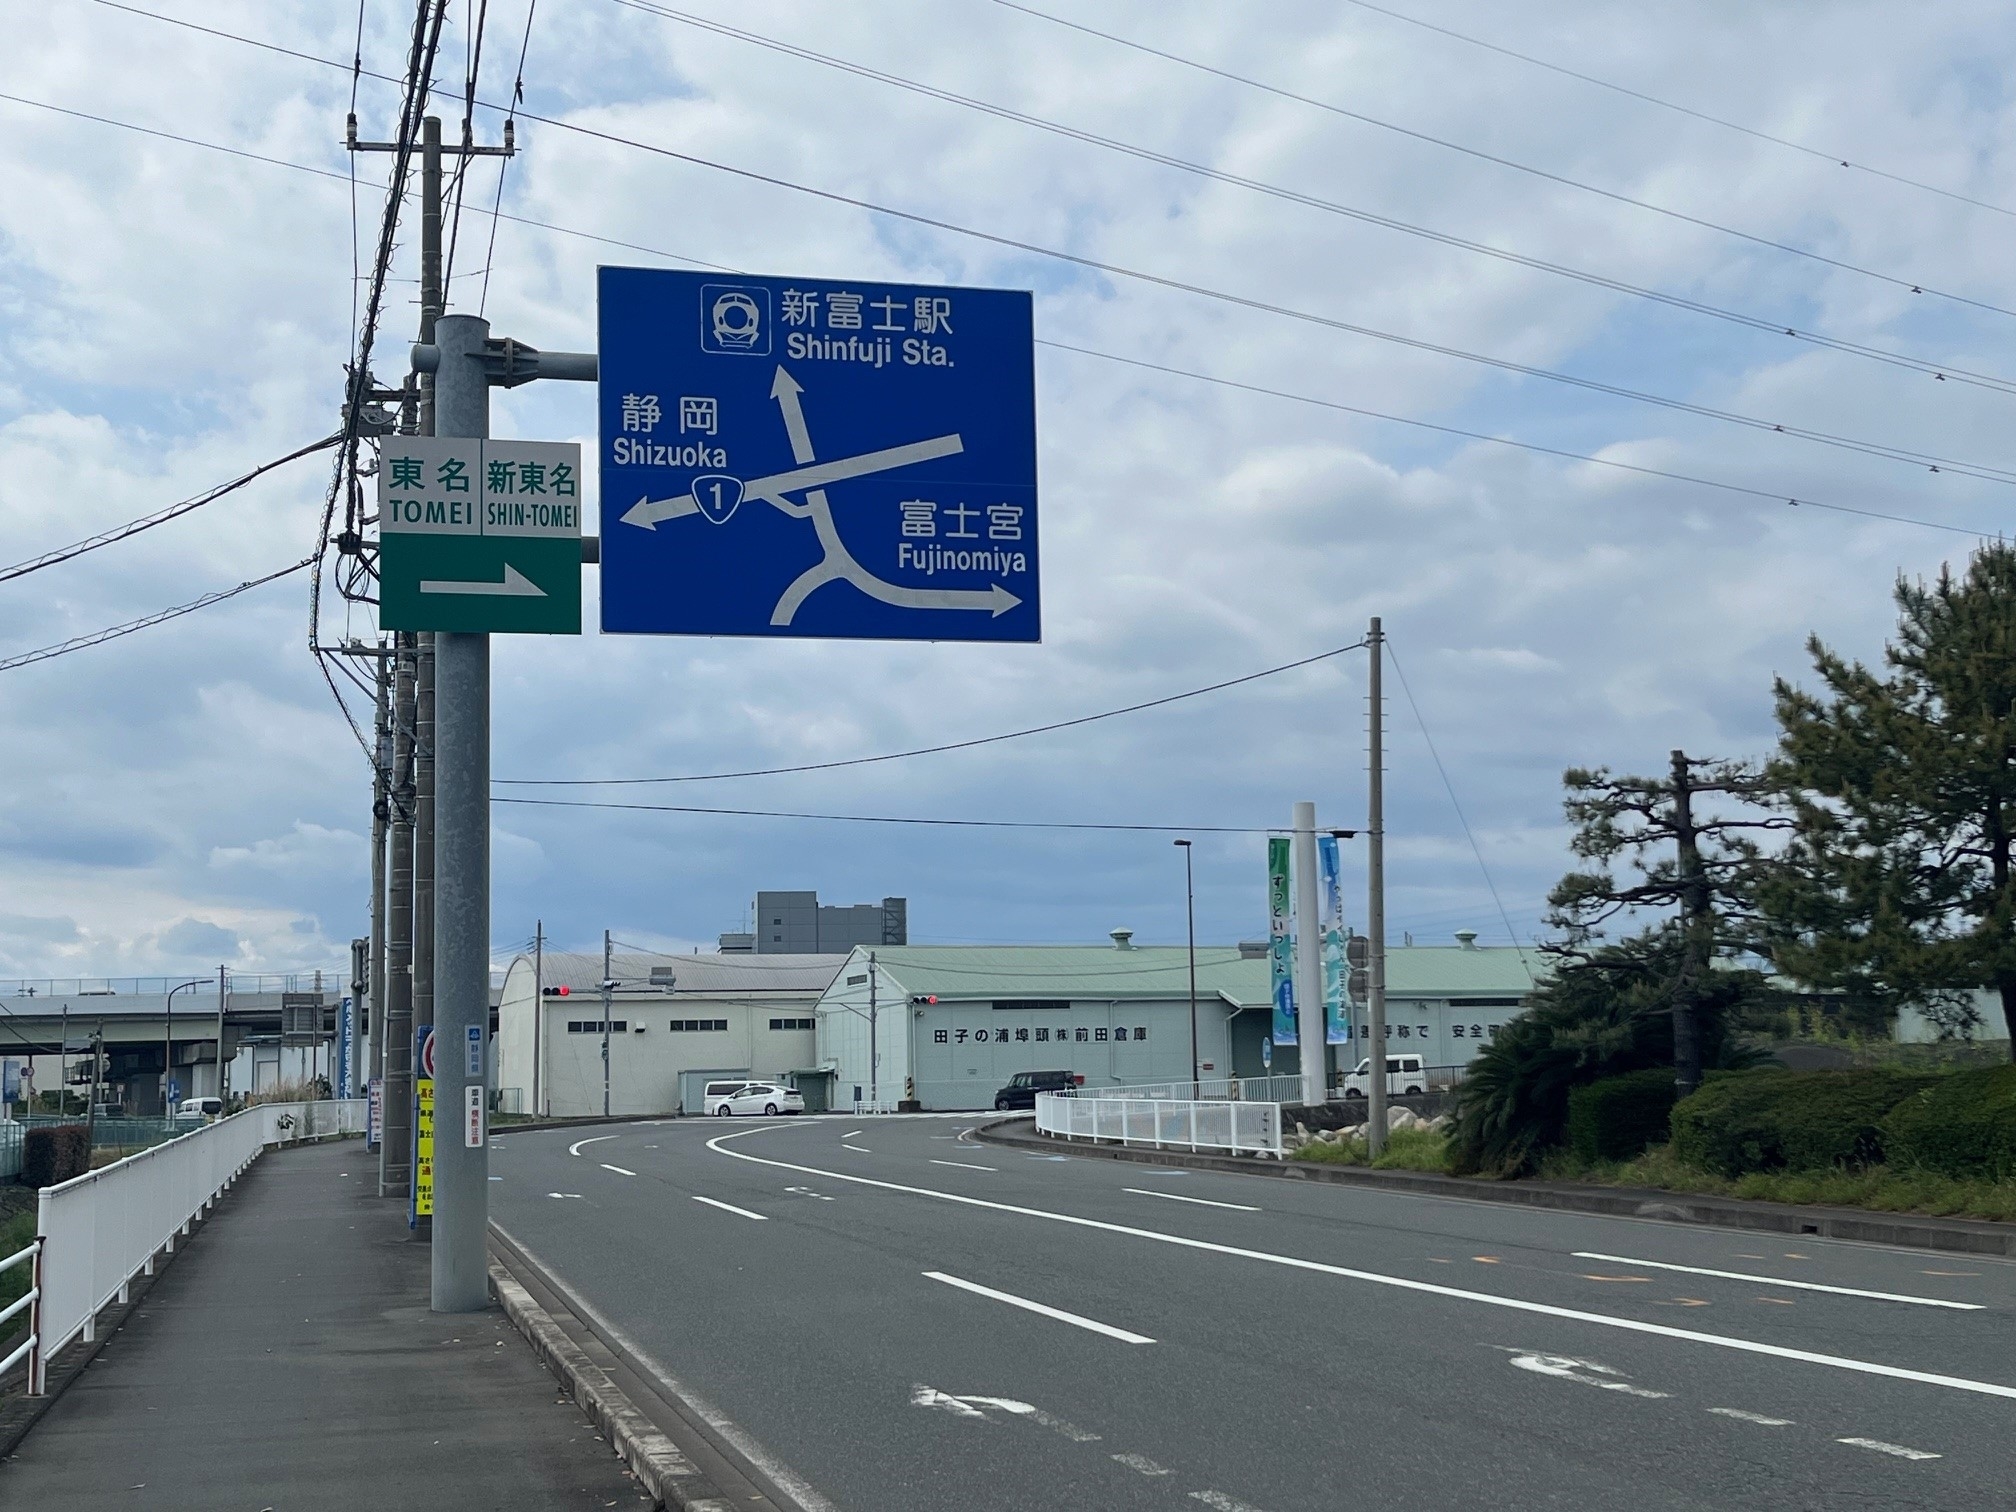 静岡県の道路標識です。案内看板には富士山と「新富士駅」「静岡」「富士宮」と書かれています。